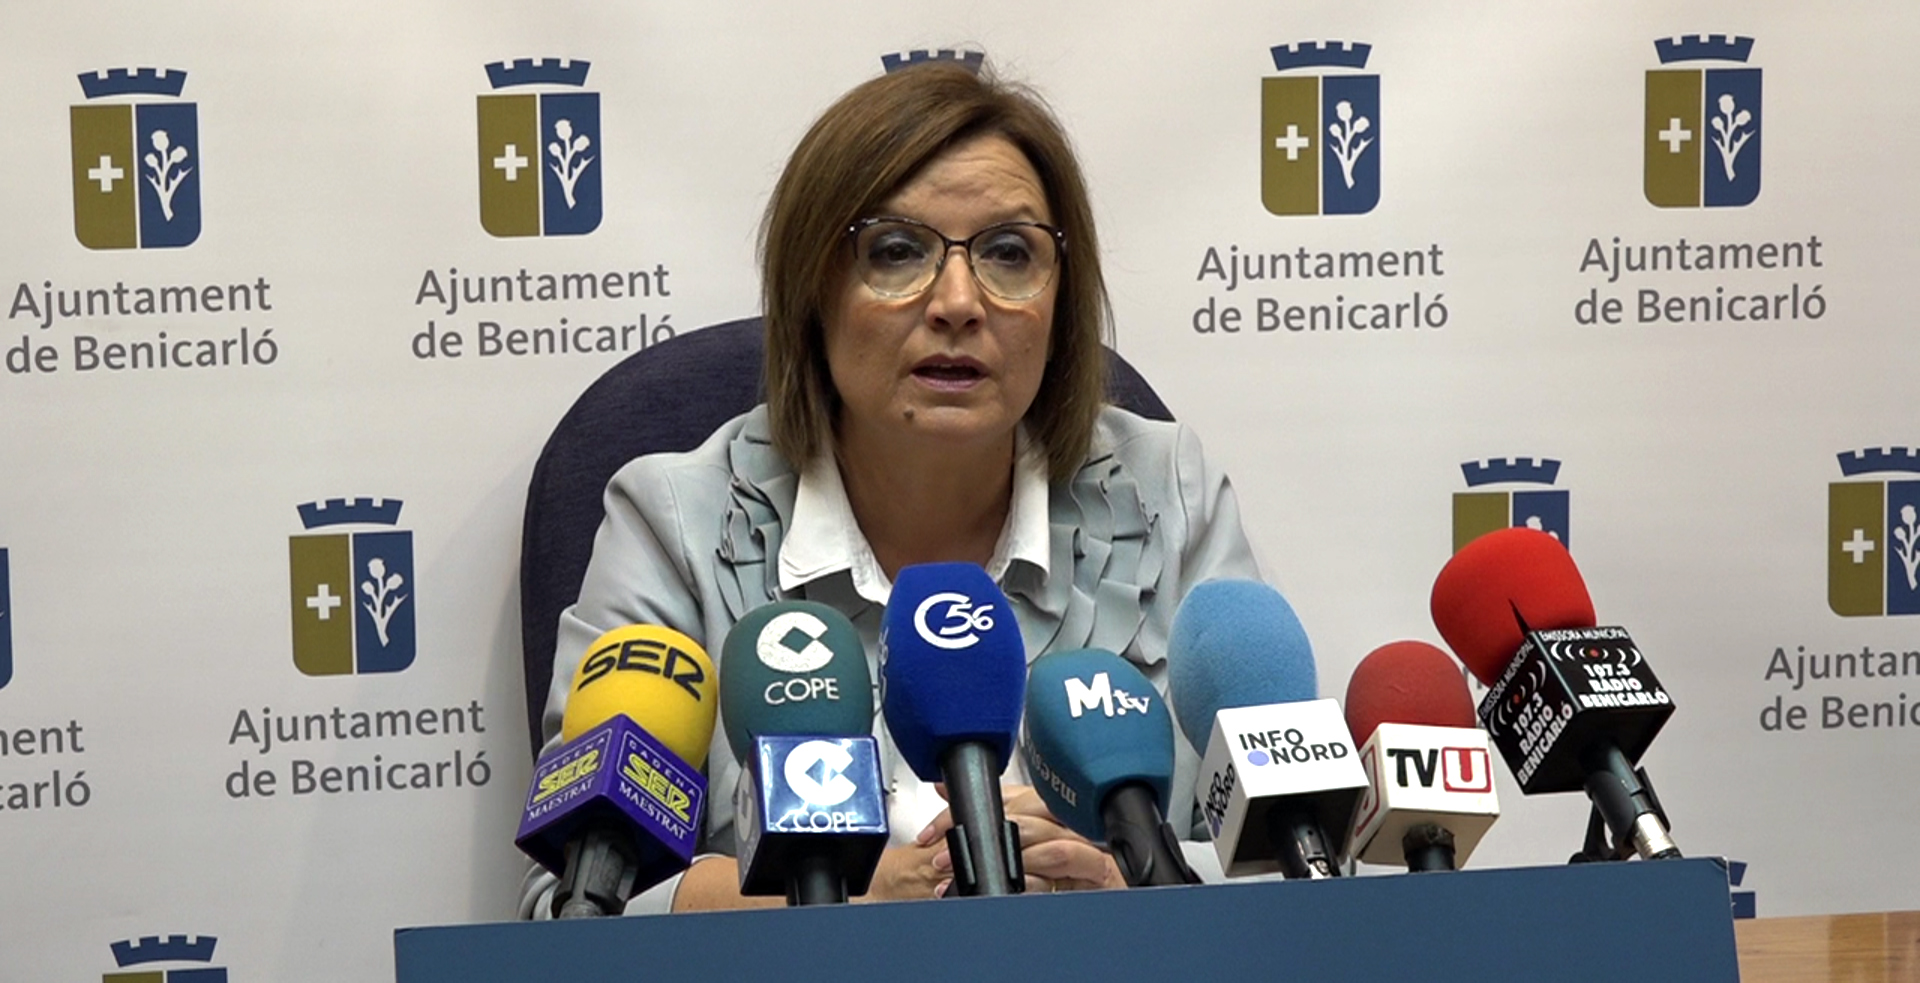 Benicarló, l'alcaldessa assegura que el Pla General s'ha redactat seguint el Document Referència de la Generalitat